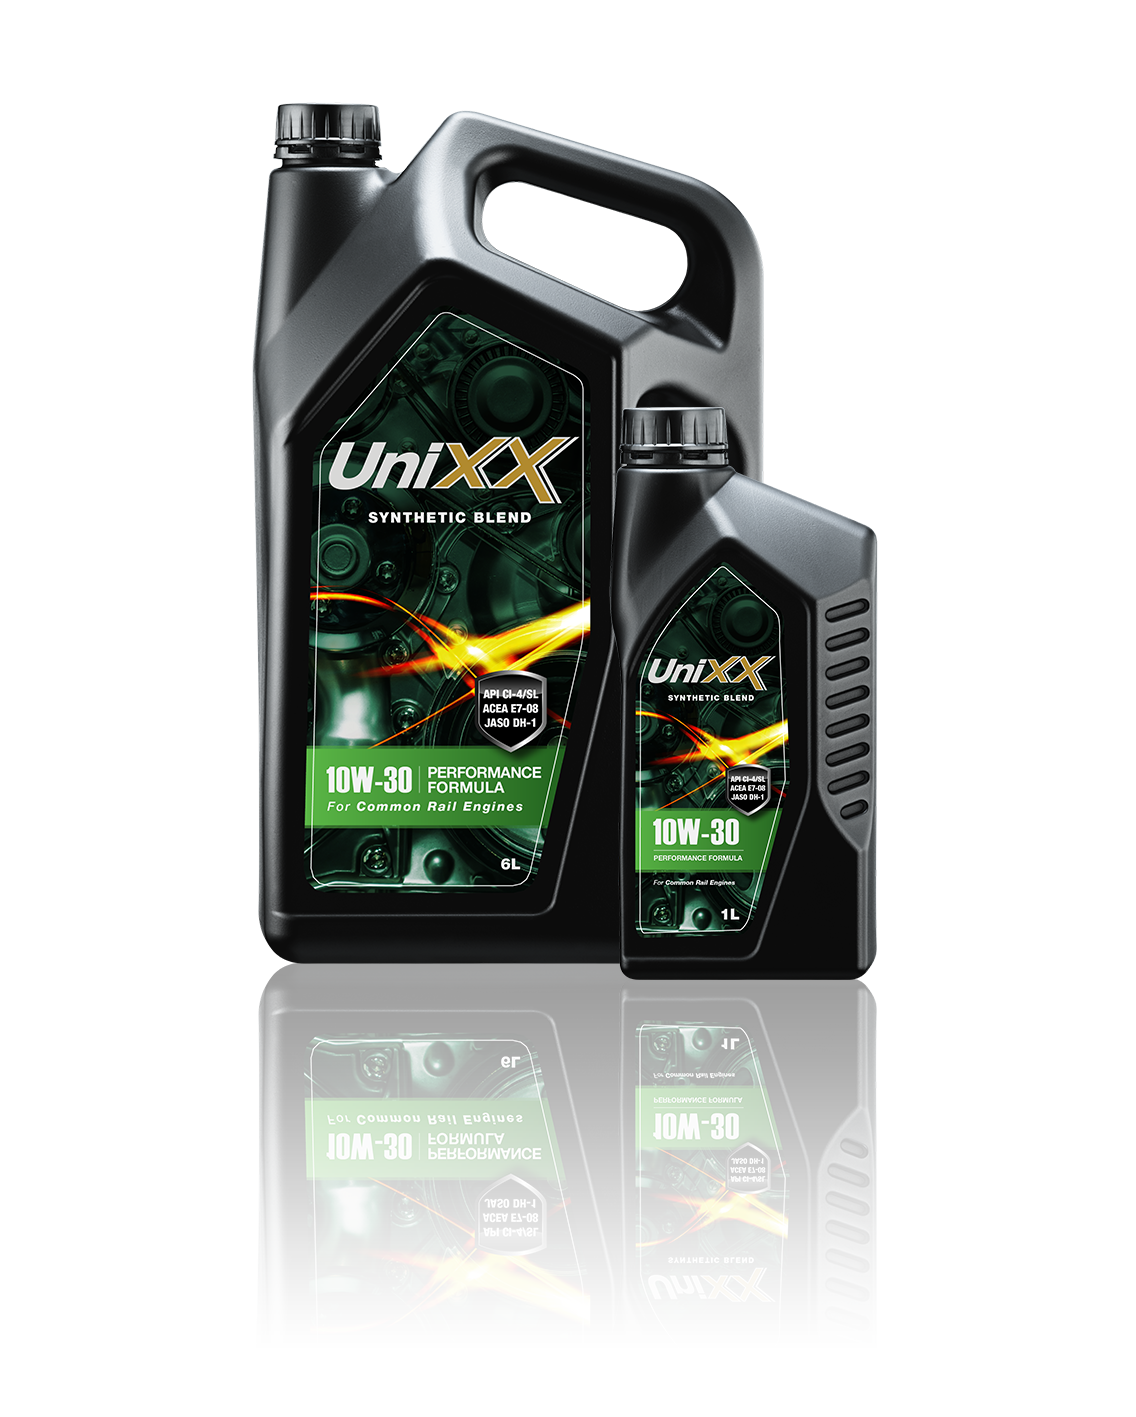 UniXX 10W-30 น้ำมันเครื่องกึ่งสังเคราะห์มาตรฐาน สูตรพรีเมี่ยม ขนาด 6 ลิตร + แถมฟรี 1 ลิตร